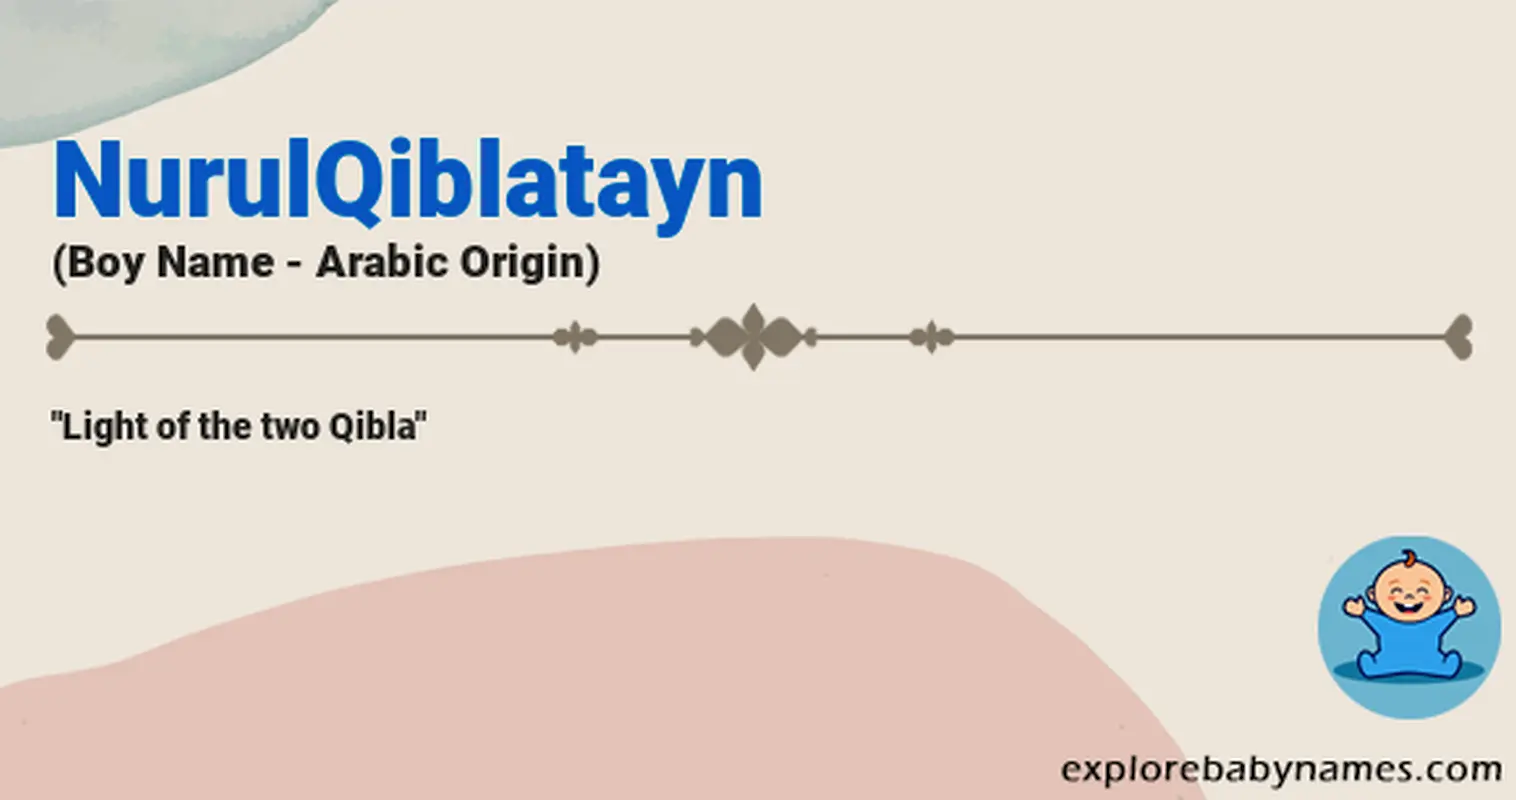 Meaning of NurulQiblatayn